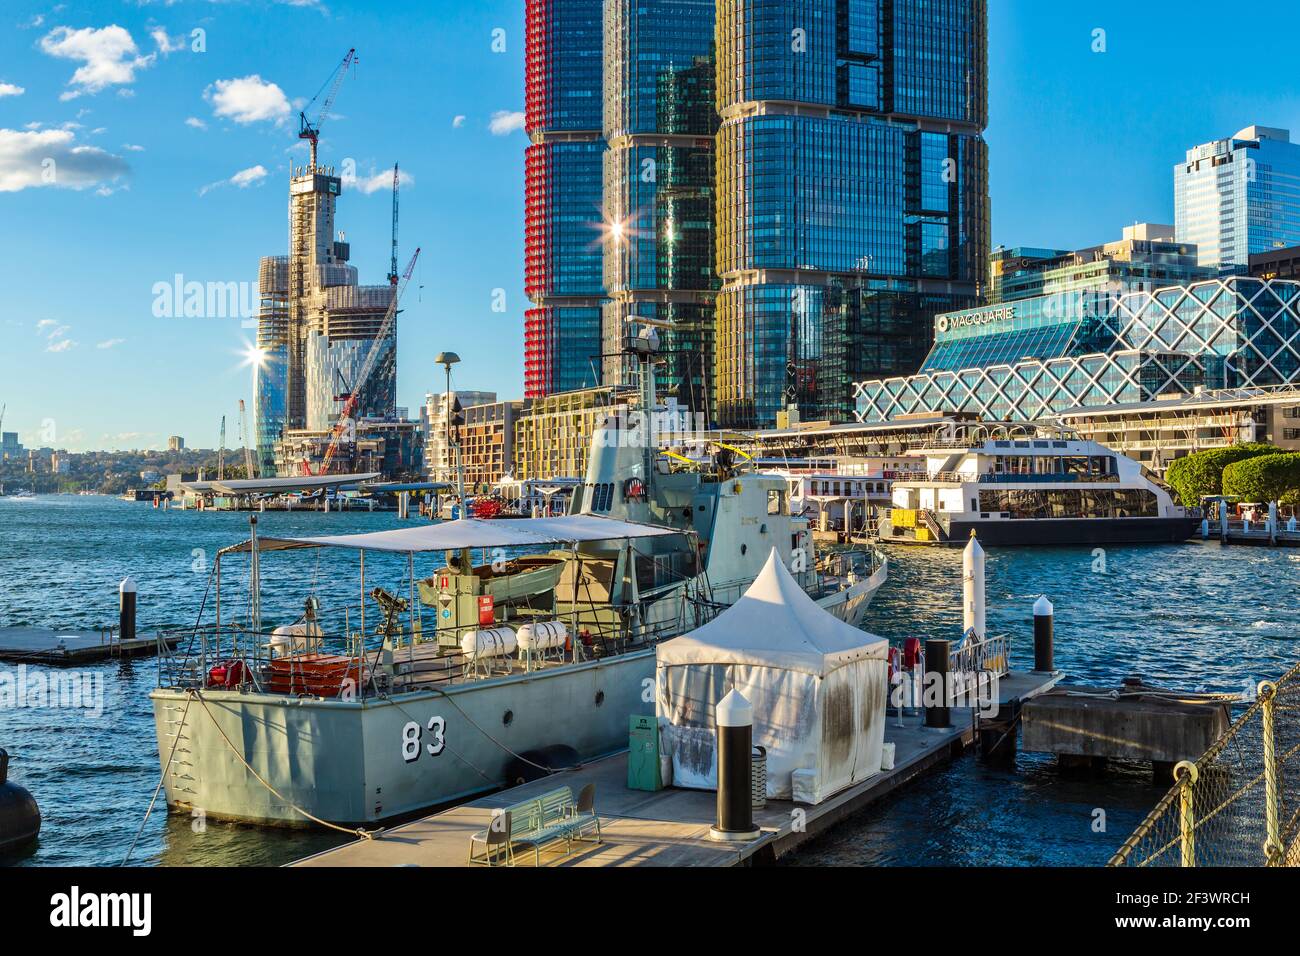 Darling Harbour, Sydney, Australien. Im Vordergrund steht das Patrouillenboot HMAS Advance, heute ein Museumsschiff. Dahinter befinden sich die International Towers Stockfoto